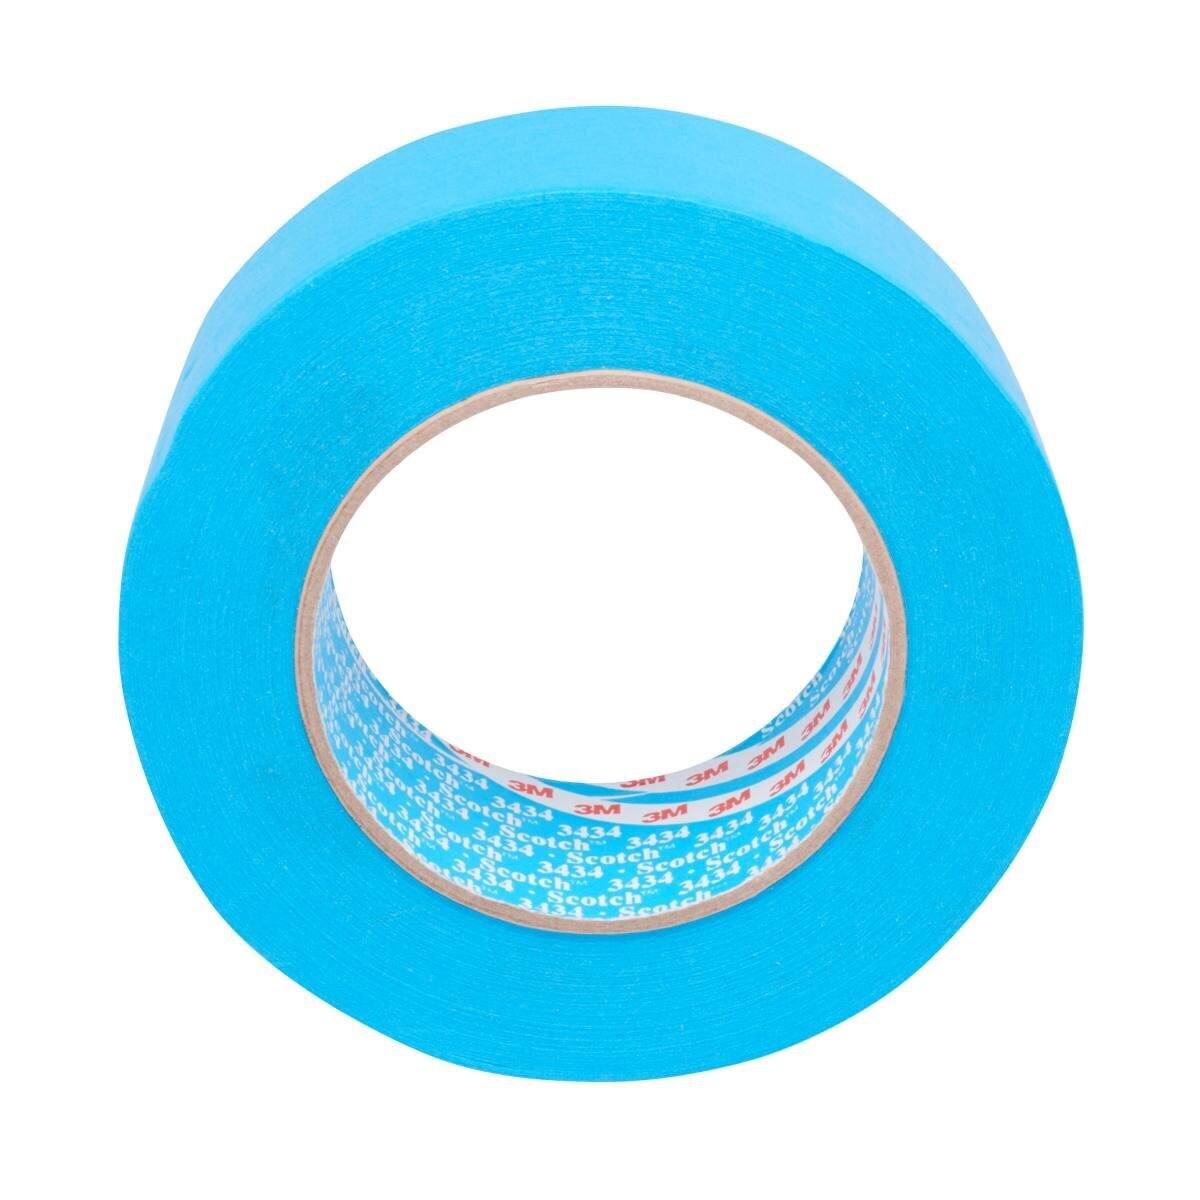 3M Scotch Blue Tape 3434, Blue, 48 mm x 50 m #07899